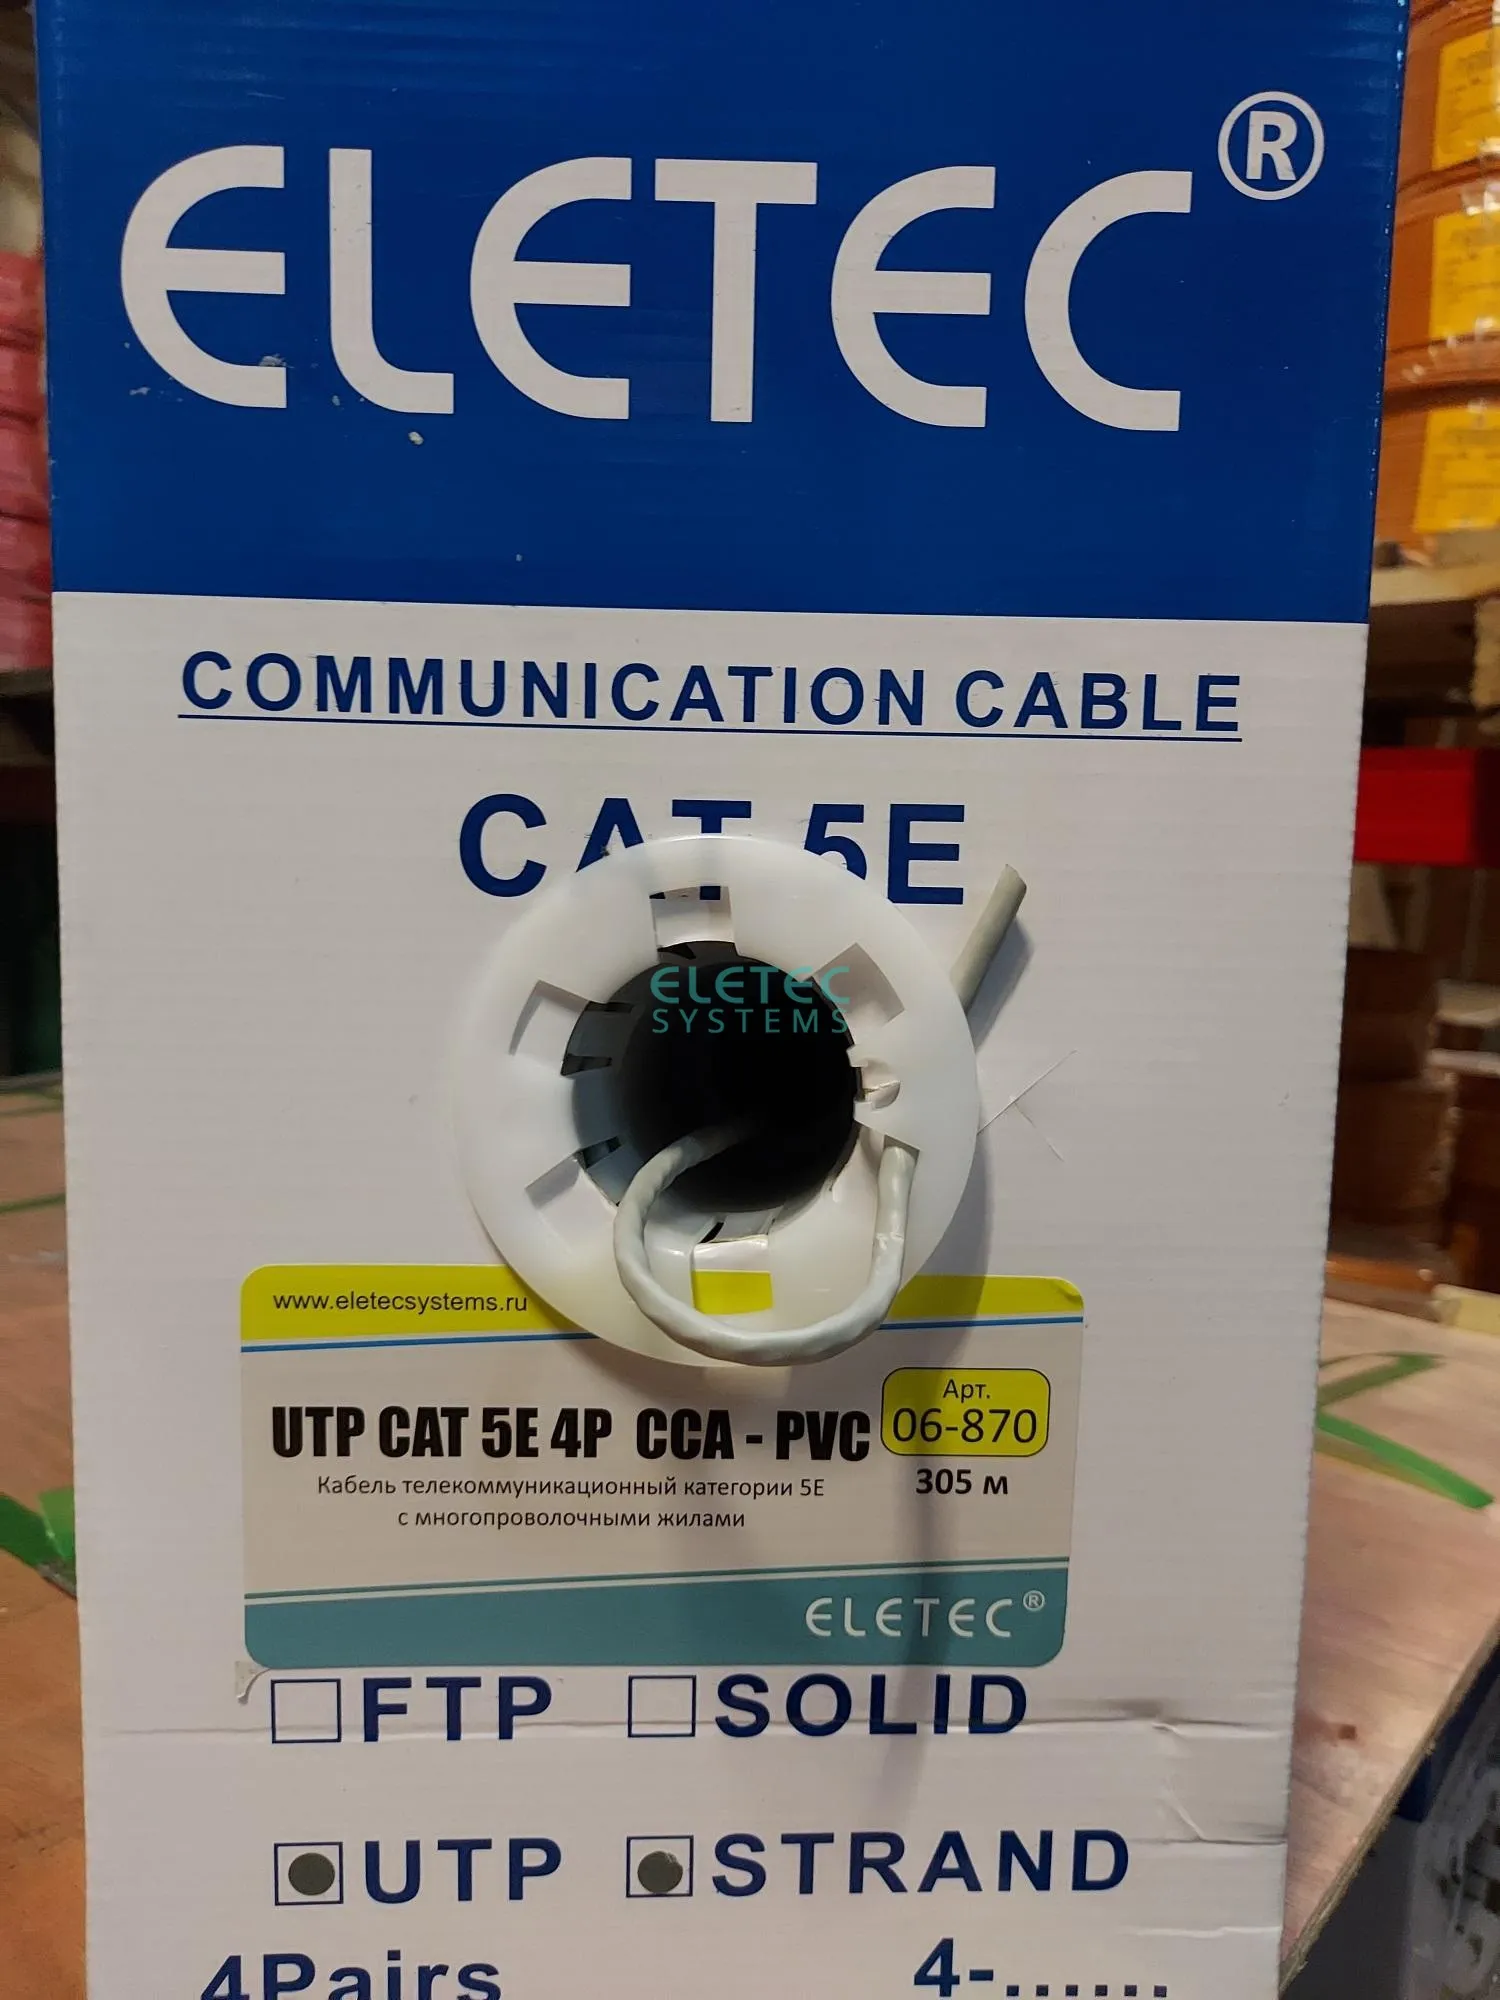 (06-870) Кабель UTP 5E Eletec 4x2xAWG24, STRANDED (многопроволочные жилы), эконом 305м, CCA(медь 30%) (ELETEC)